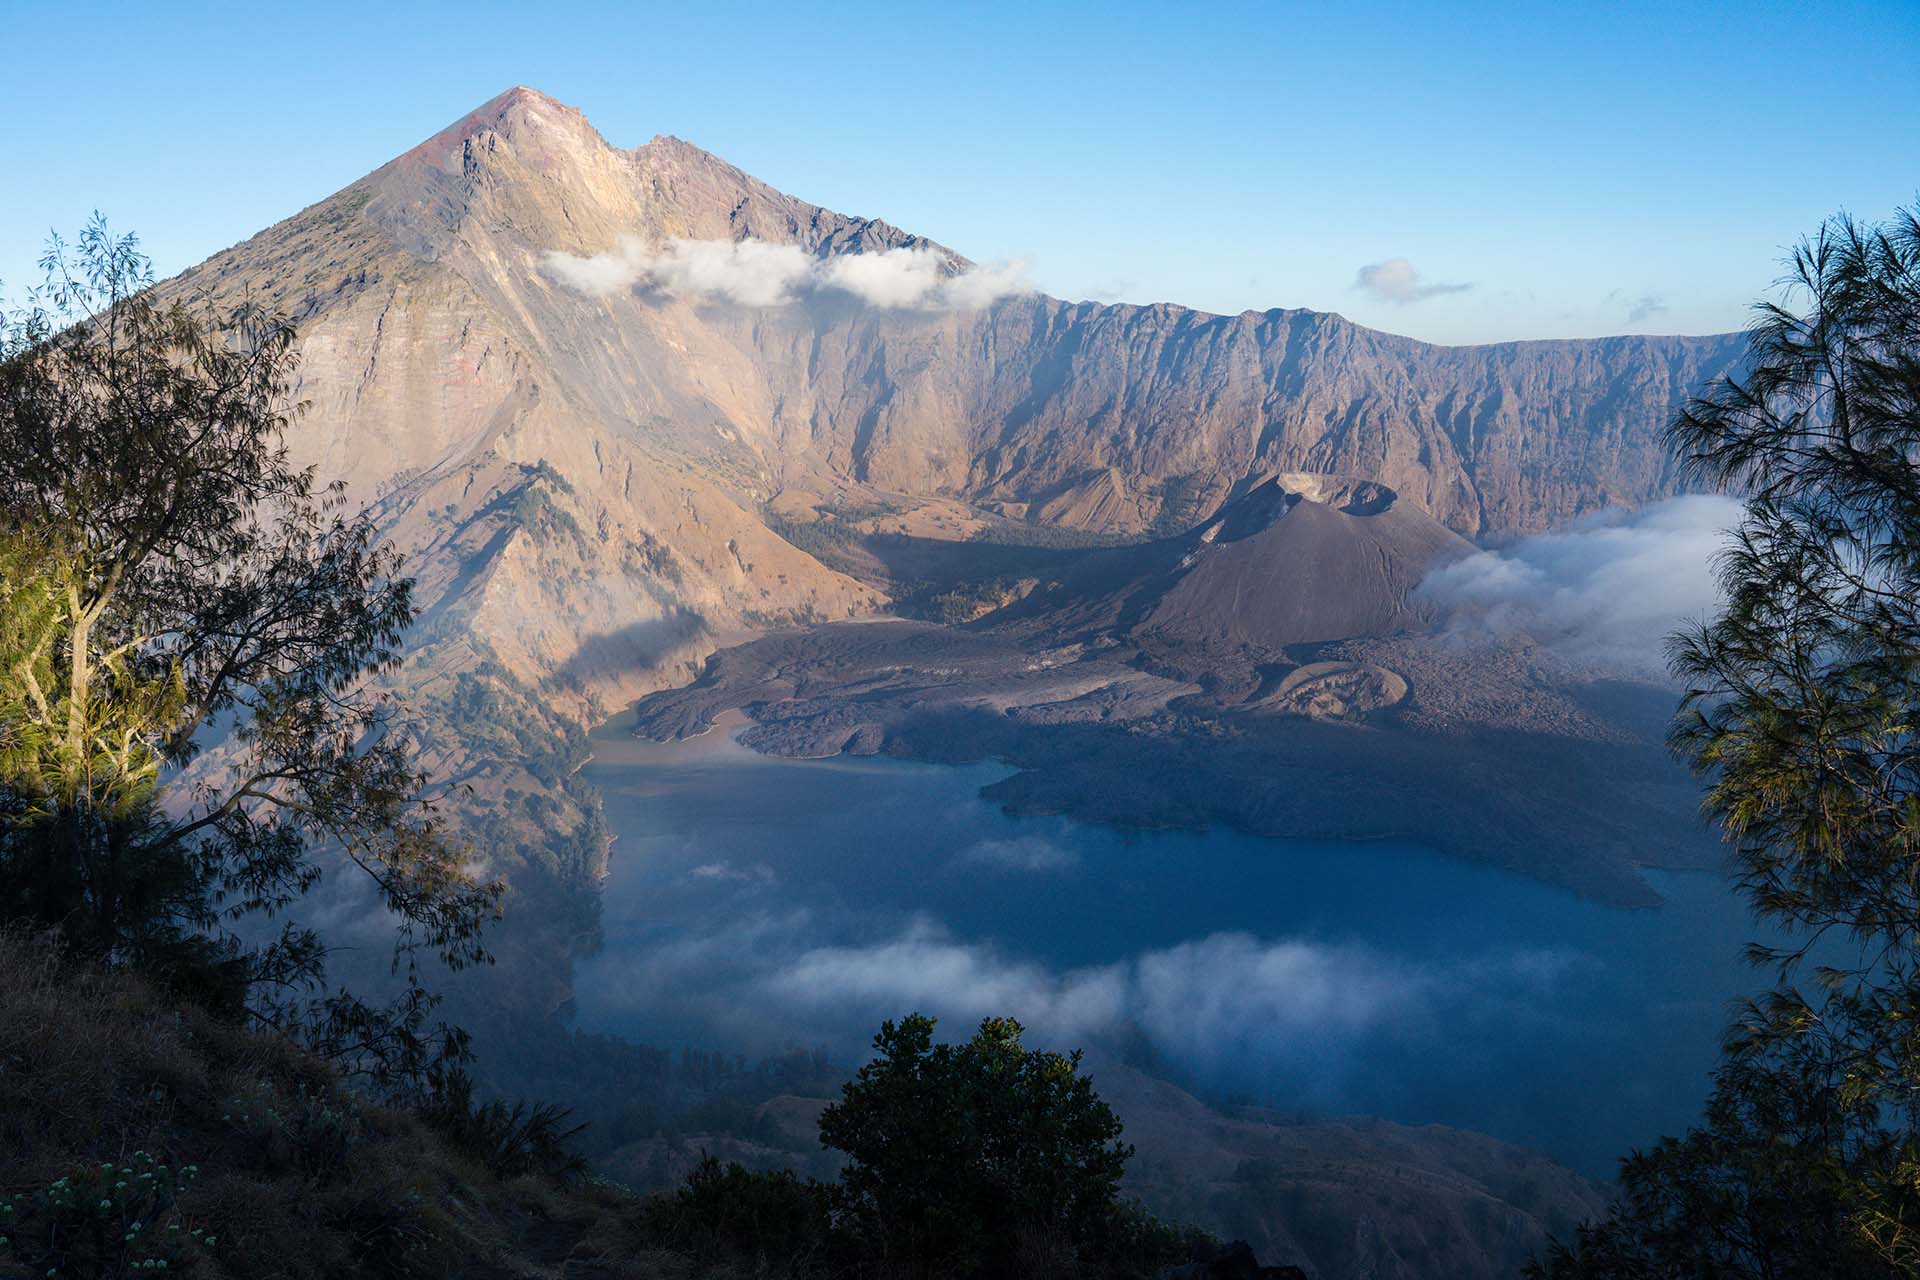 Beklimming Rinjani vulkaan Lombok: afzien voor spectaculair uitzicht